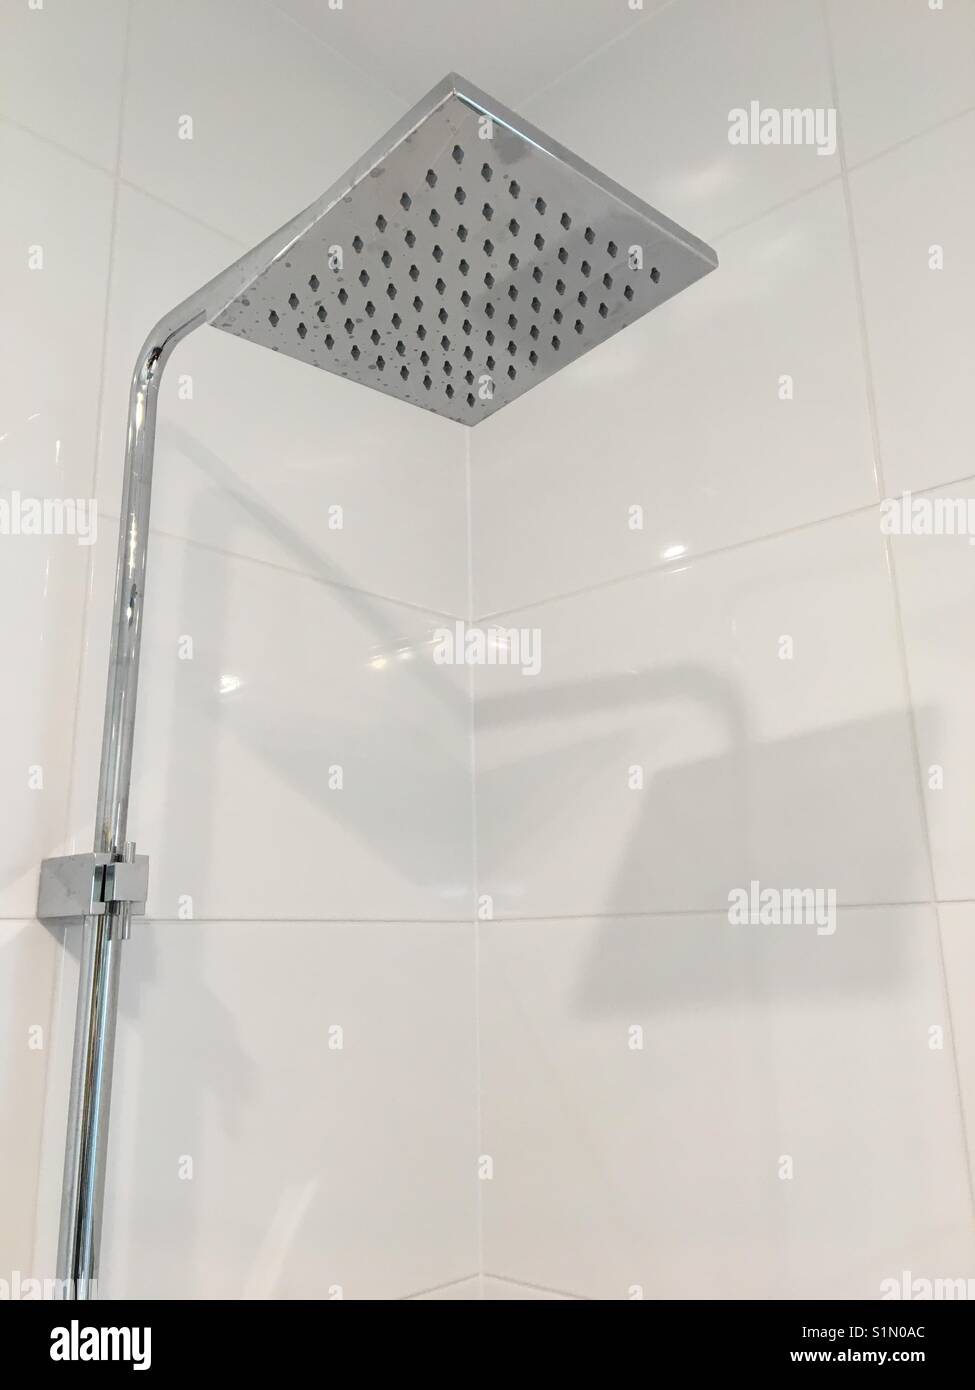 Cabeza de ducha cuadrada fotografías e imágenes de alta resolución - Alamy